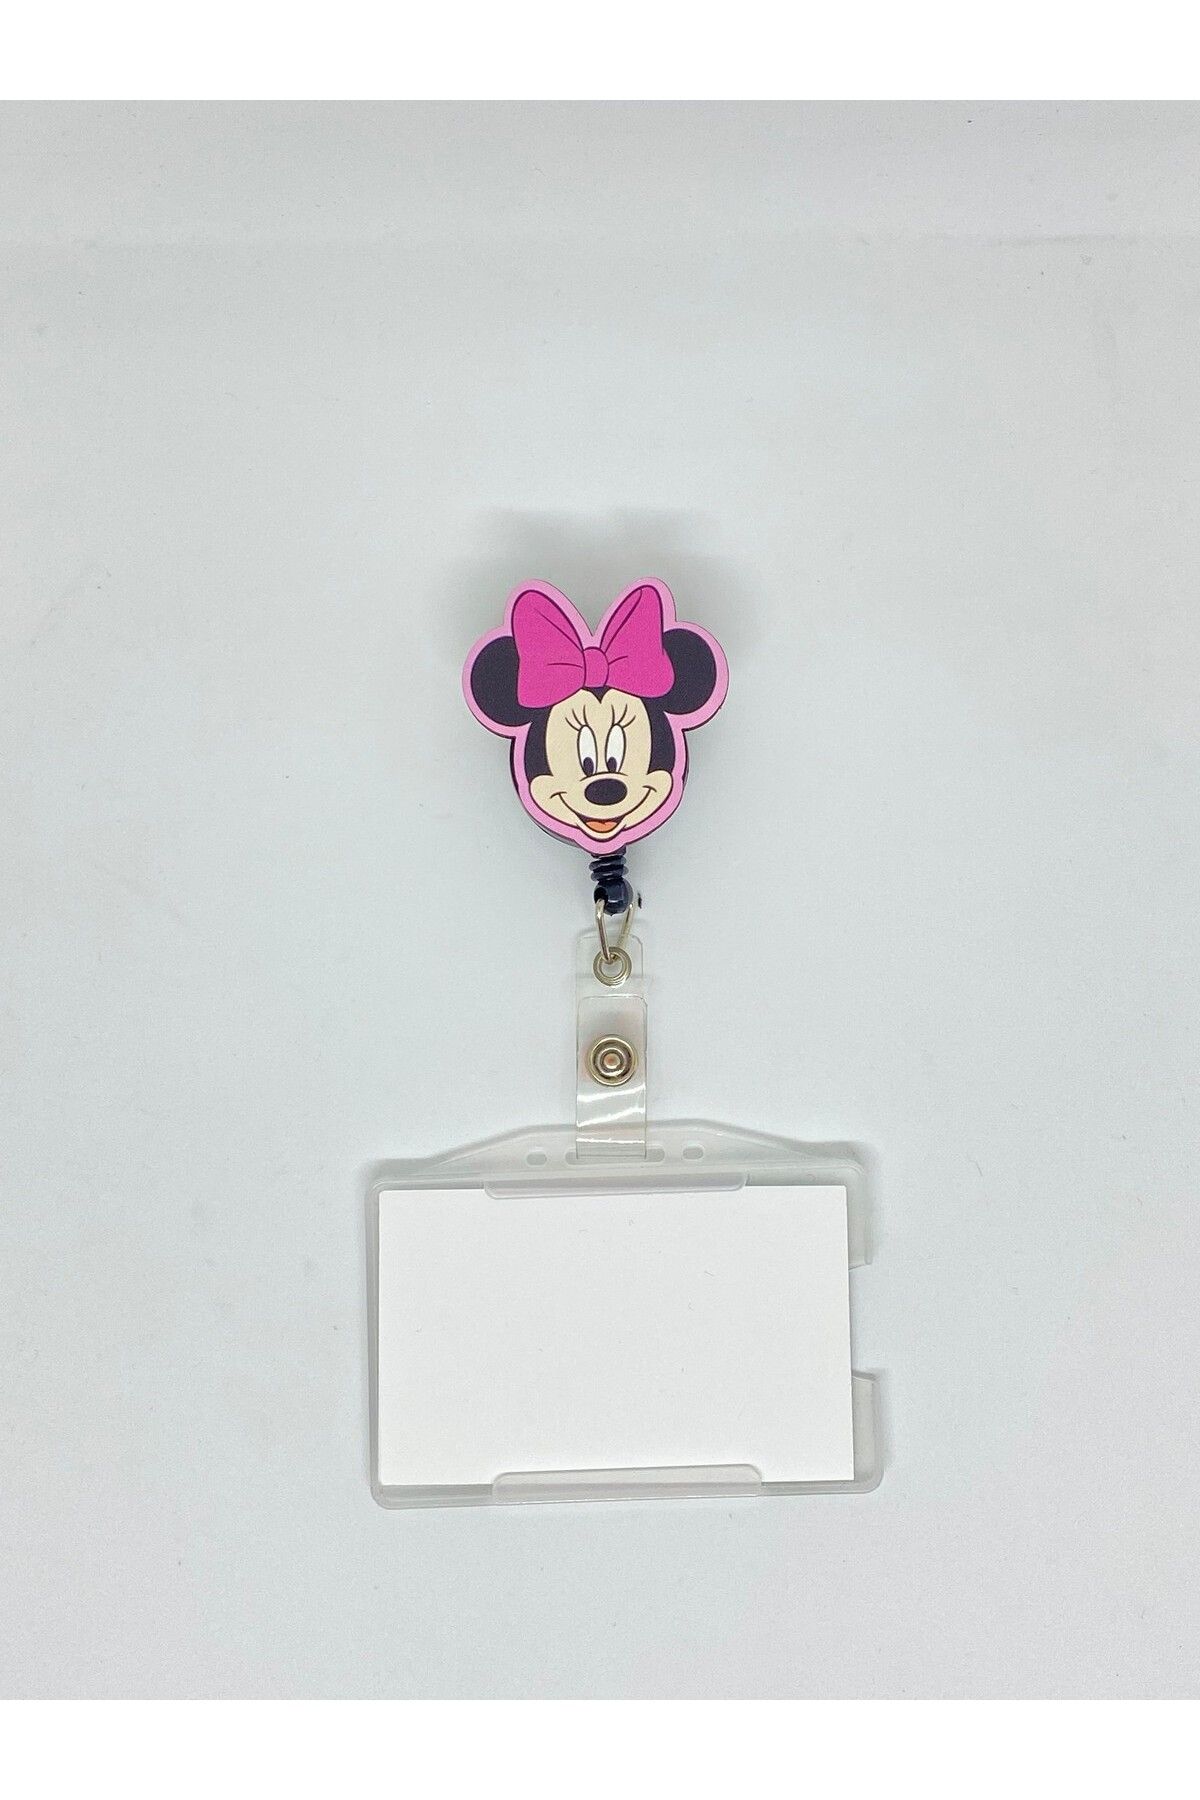 Sağlıkçı Shopping Minnie Mouse 2 Temalı Yoyo Kartlık Yoyo Yaka Kartlığı